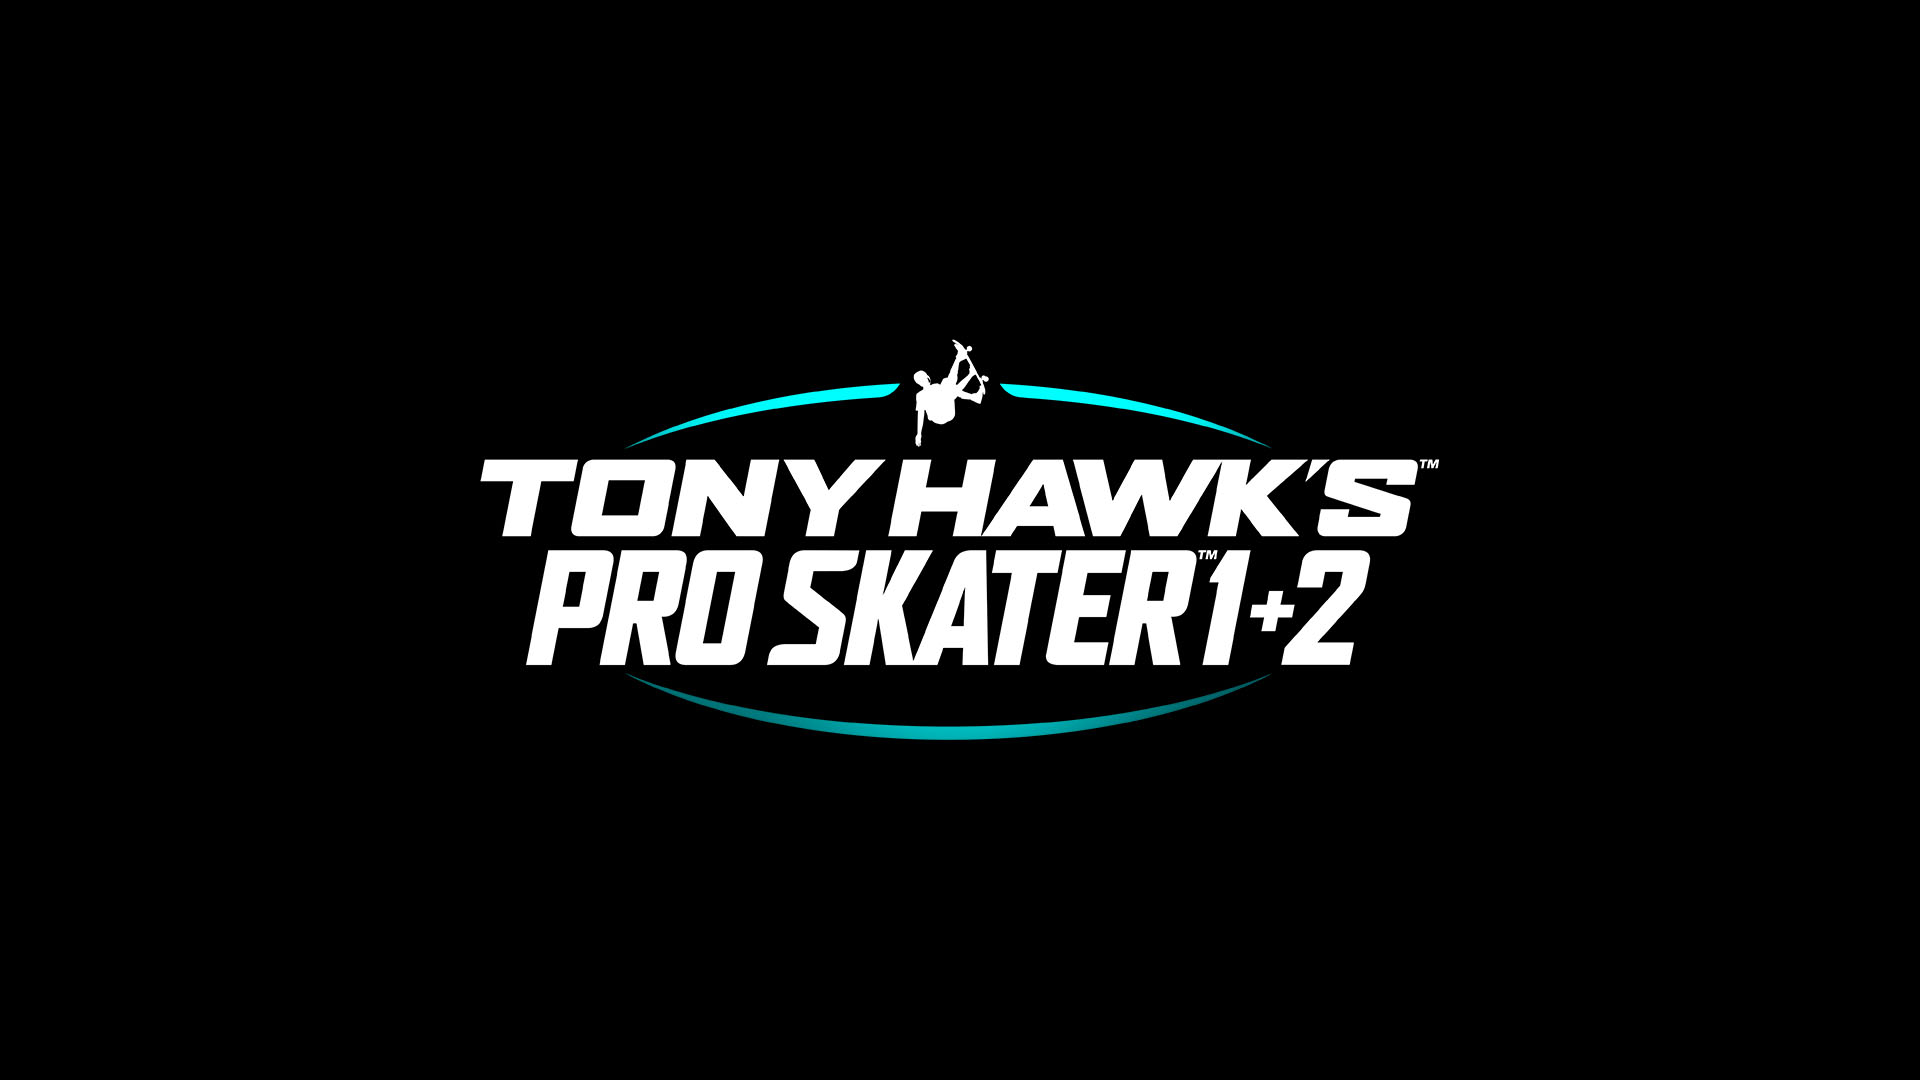 Trofeos de Tony Hawk's Pro Skater 1 + 2